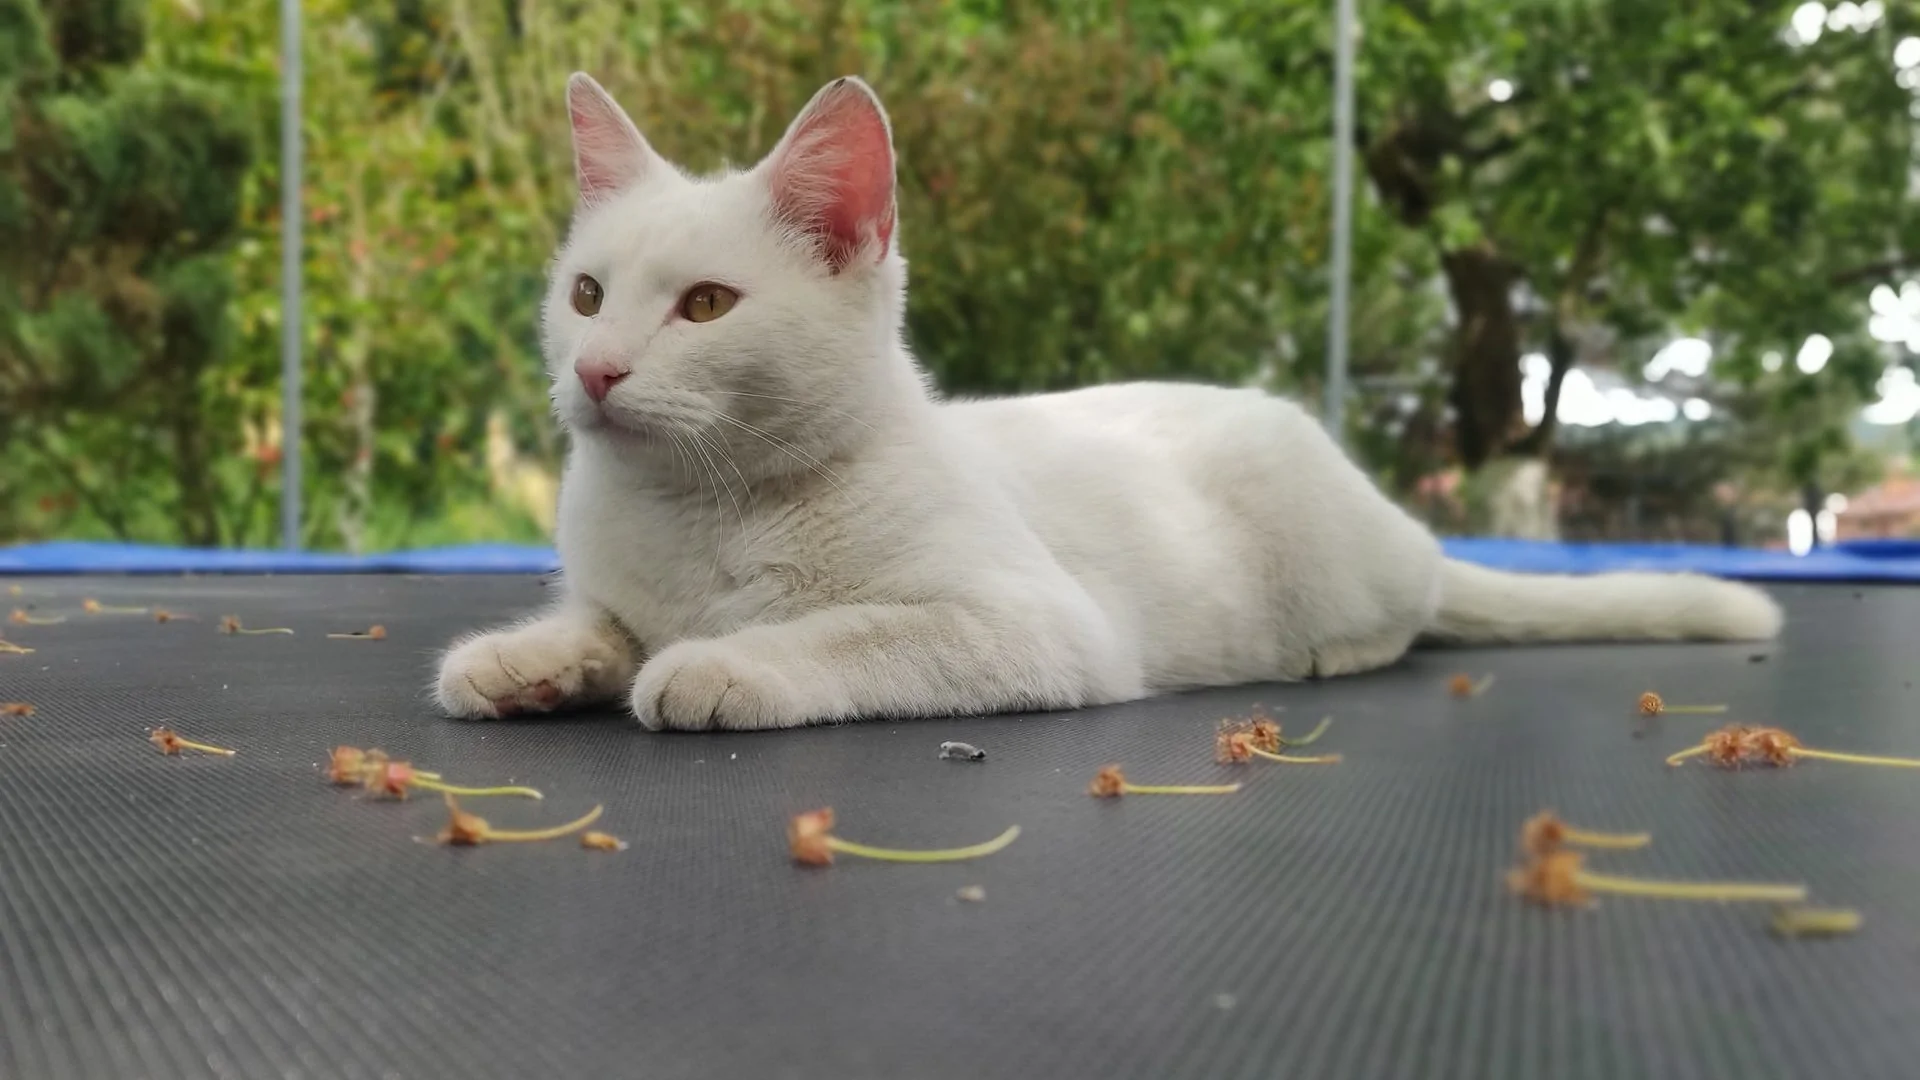 Witte kat op trampoline, vooraanzicht.